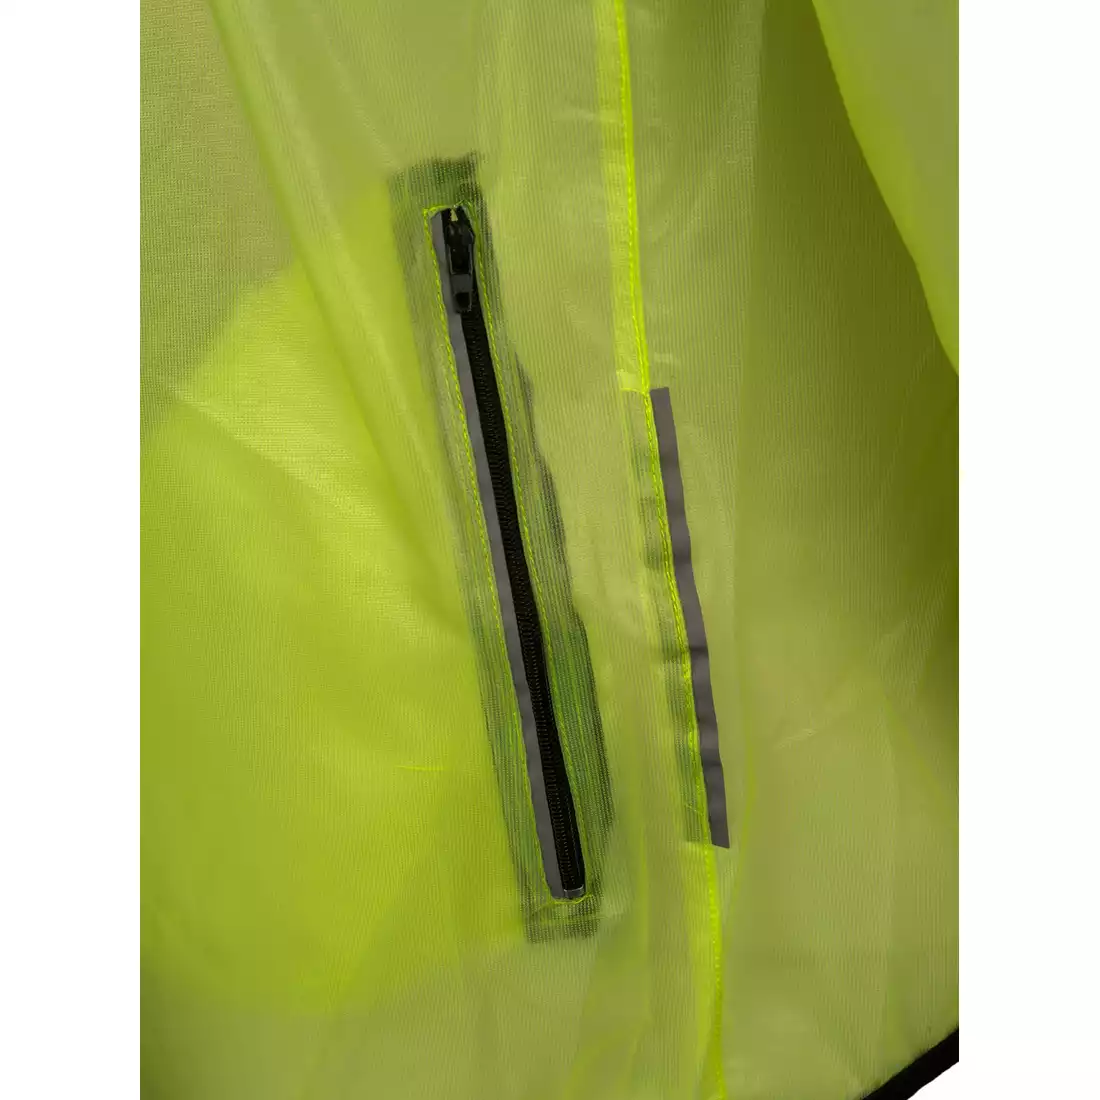 CROSSROAD RACE ultralekka kurtka rowerowe przeciwdeszczow, transparent-fluor